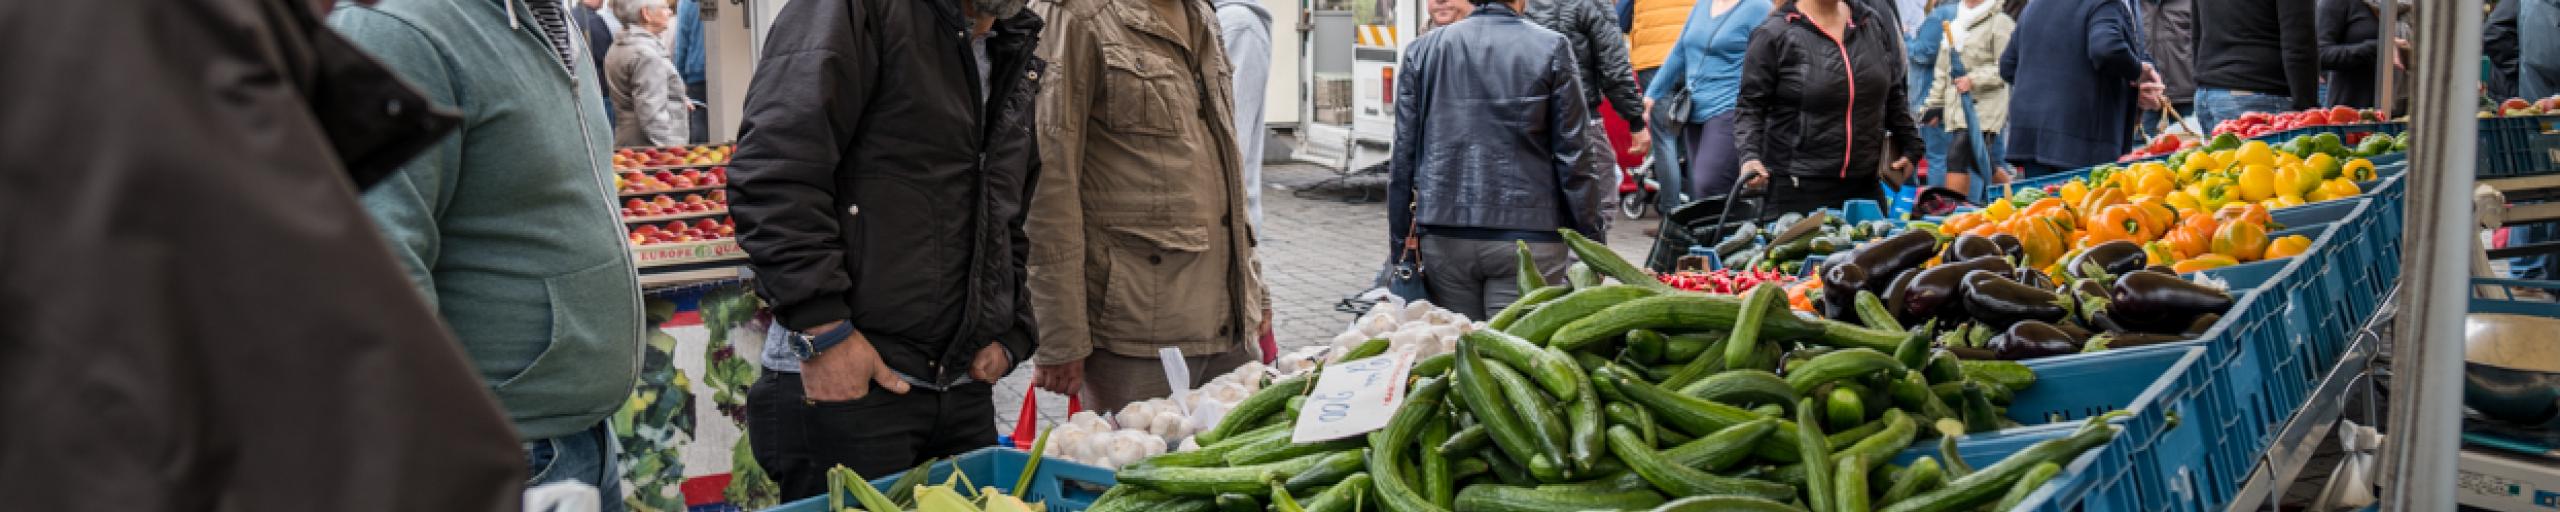 Mensen bij een marktkraam met groenten